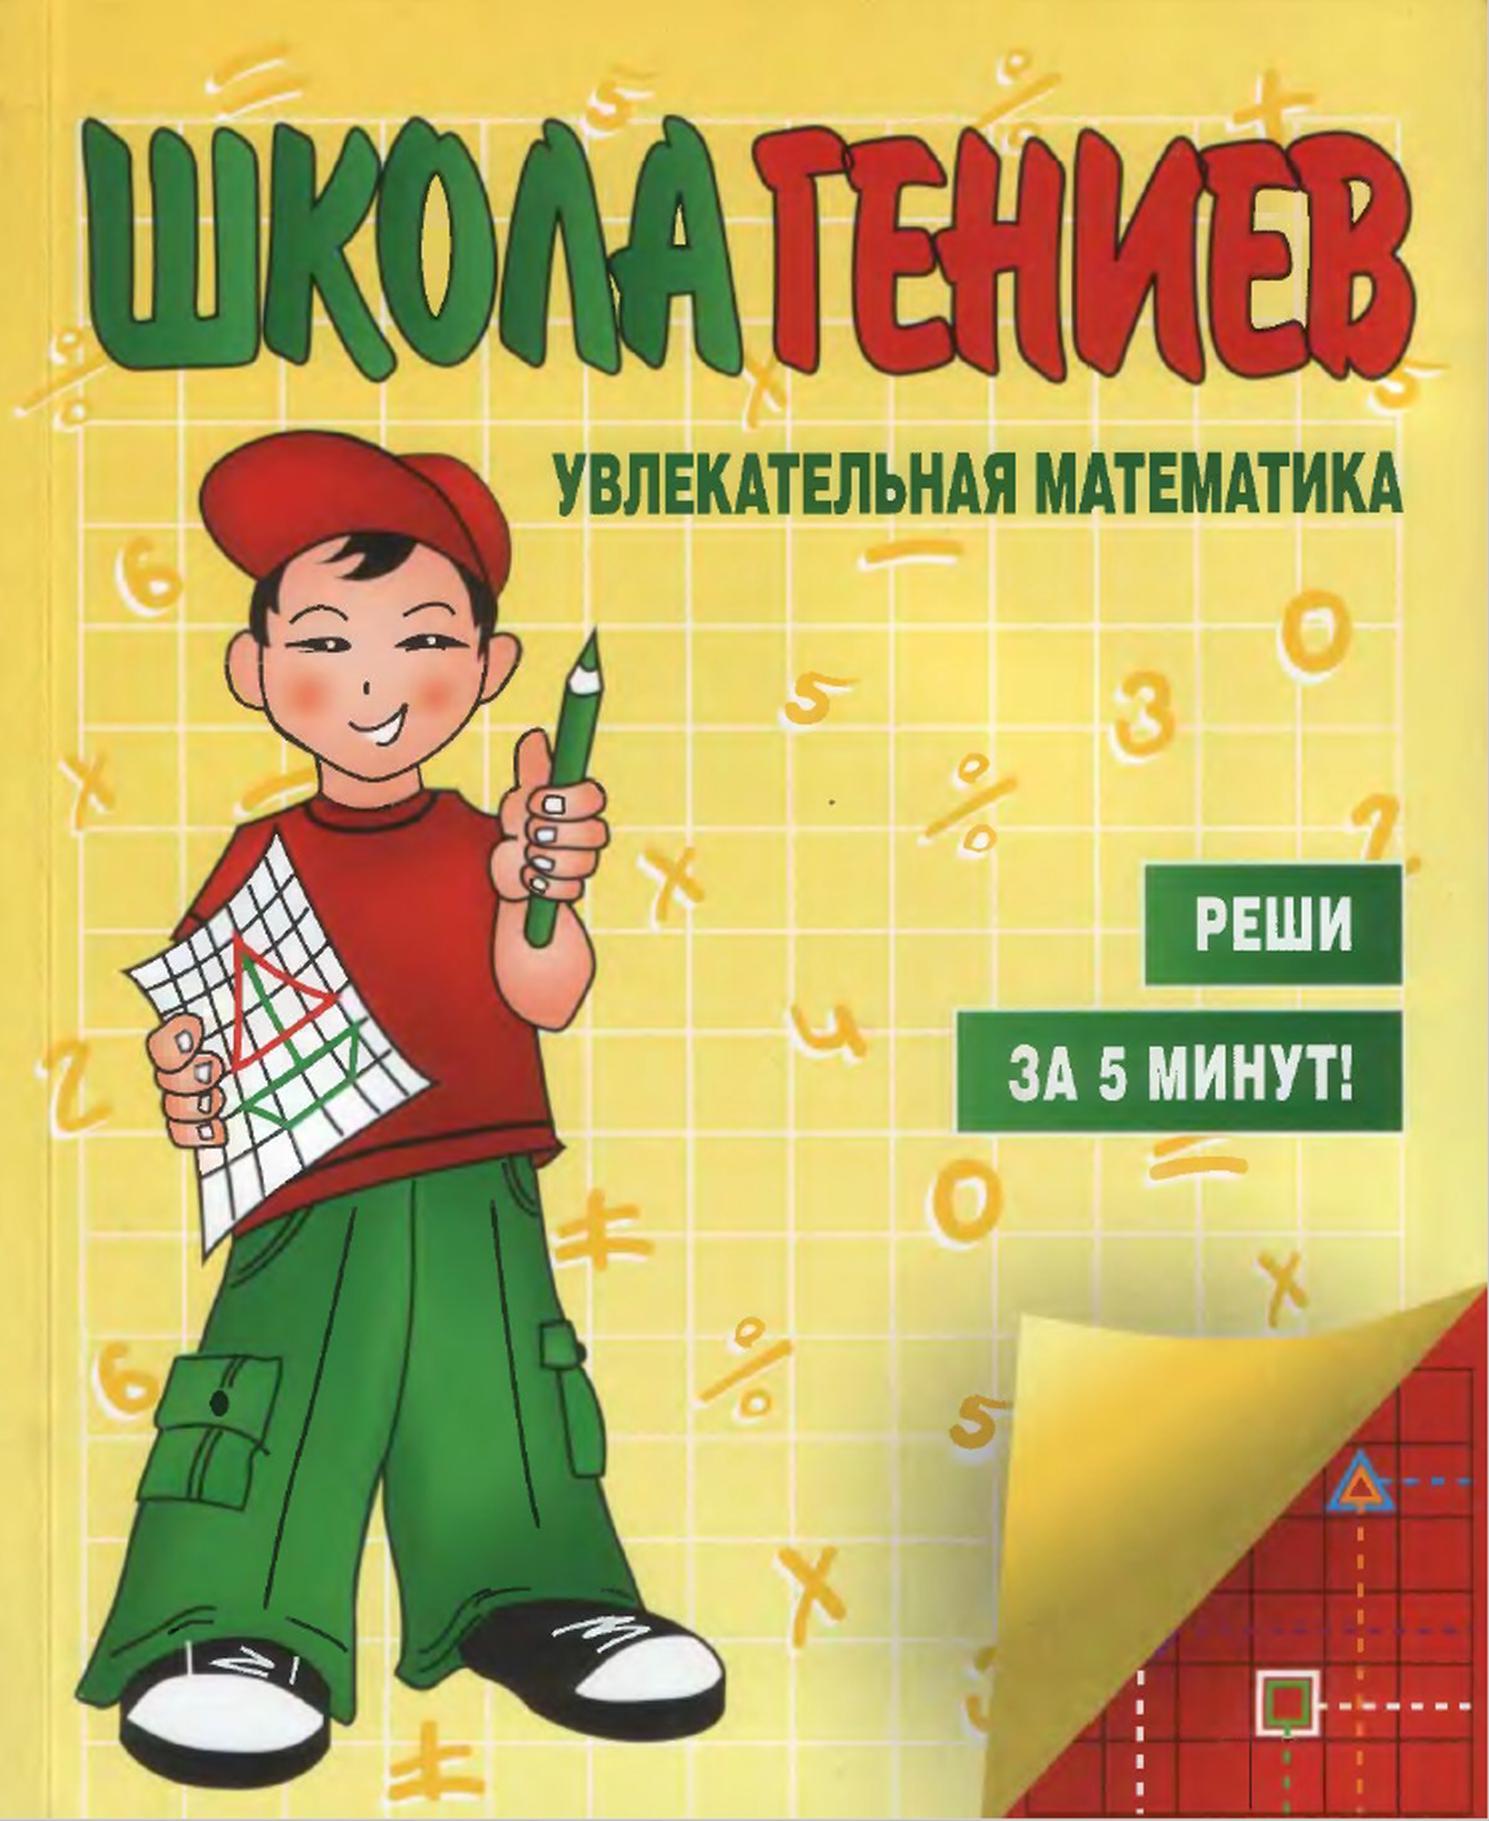 Школа гениев, Увлекательная математика, Реши за 5 минут, Мукосеева В.А., 2008